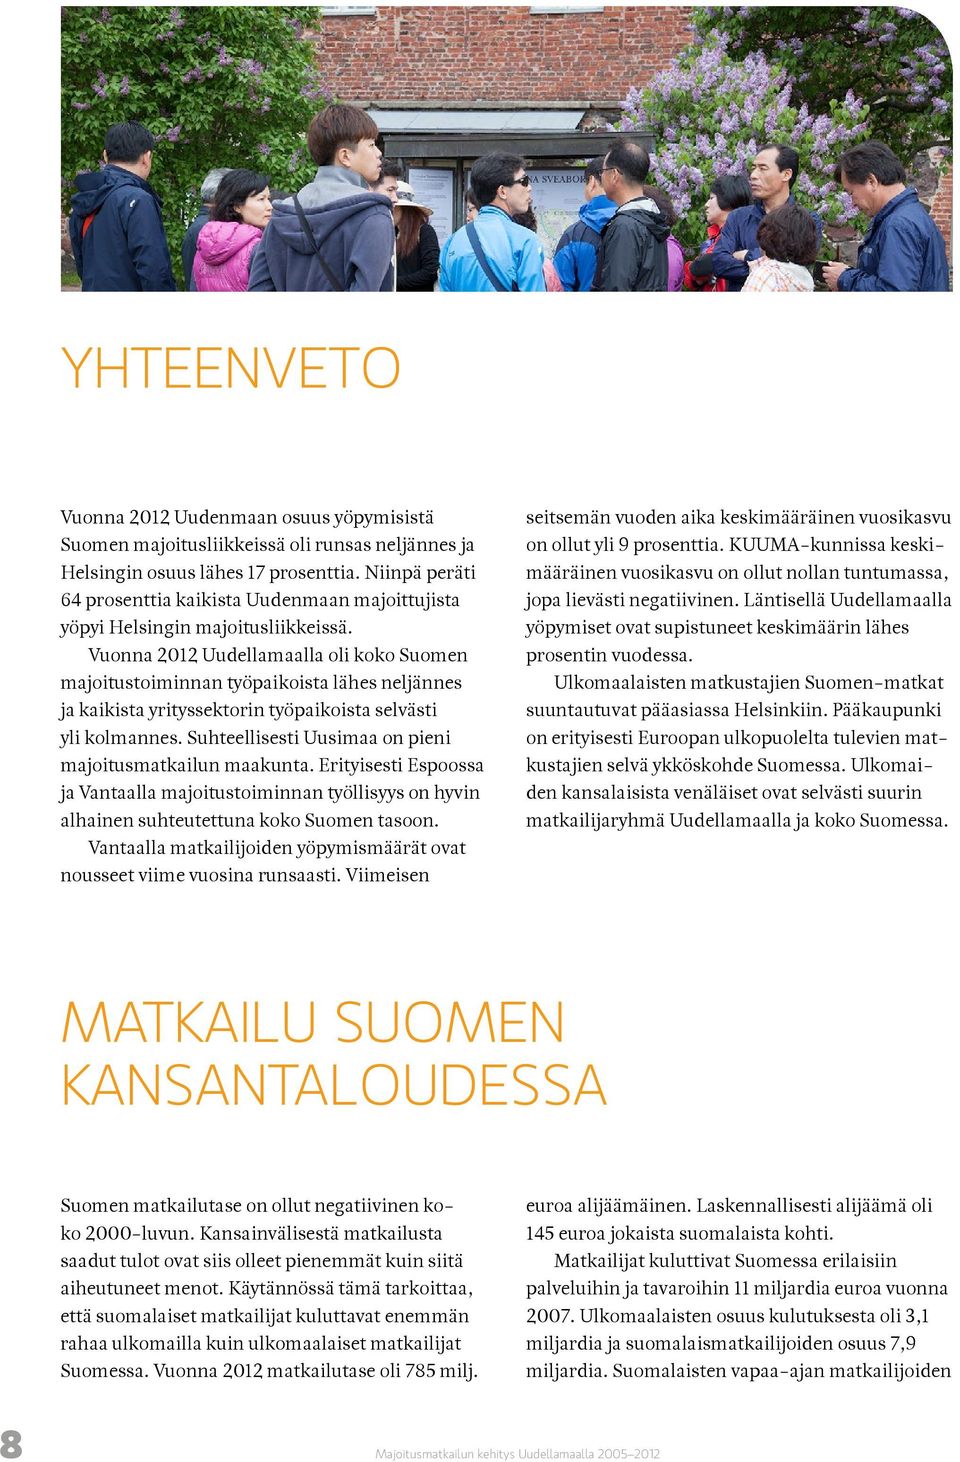 Vuonna 2012 Uudellamaalla oli koko Suomen majoitustoiminnan työpaikoista lähes neljännes ja kaikista yrityssektorin työpaikoista selvästi yli kolmannes.